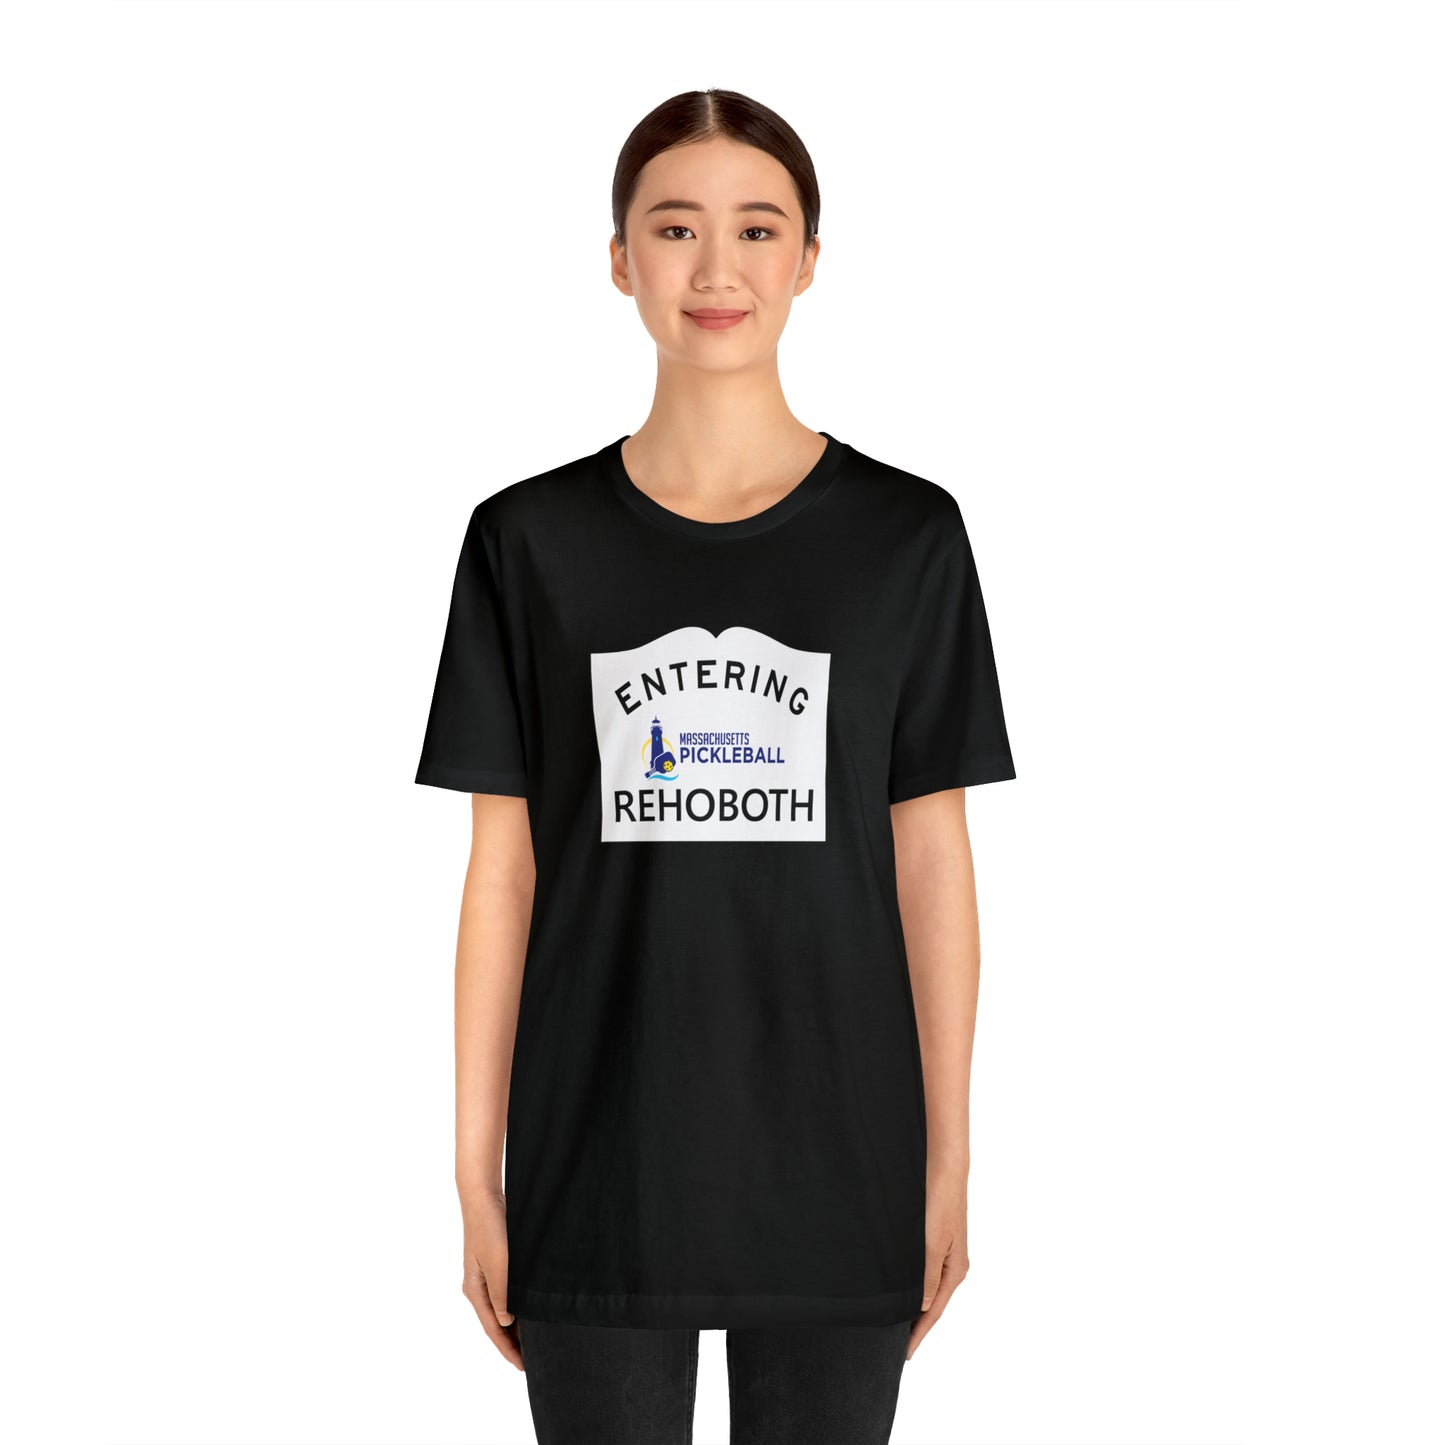 Rehoboth, Mass Pickleball Short Sleeve T-Shirt